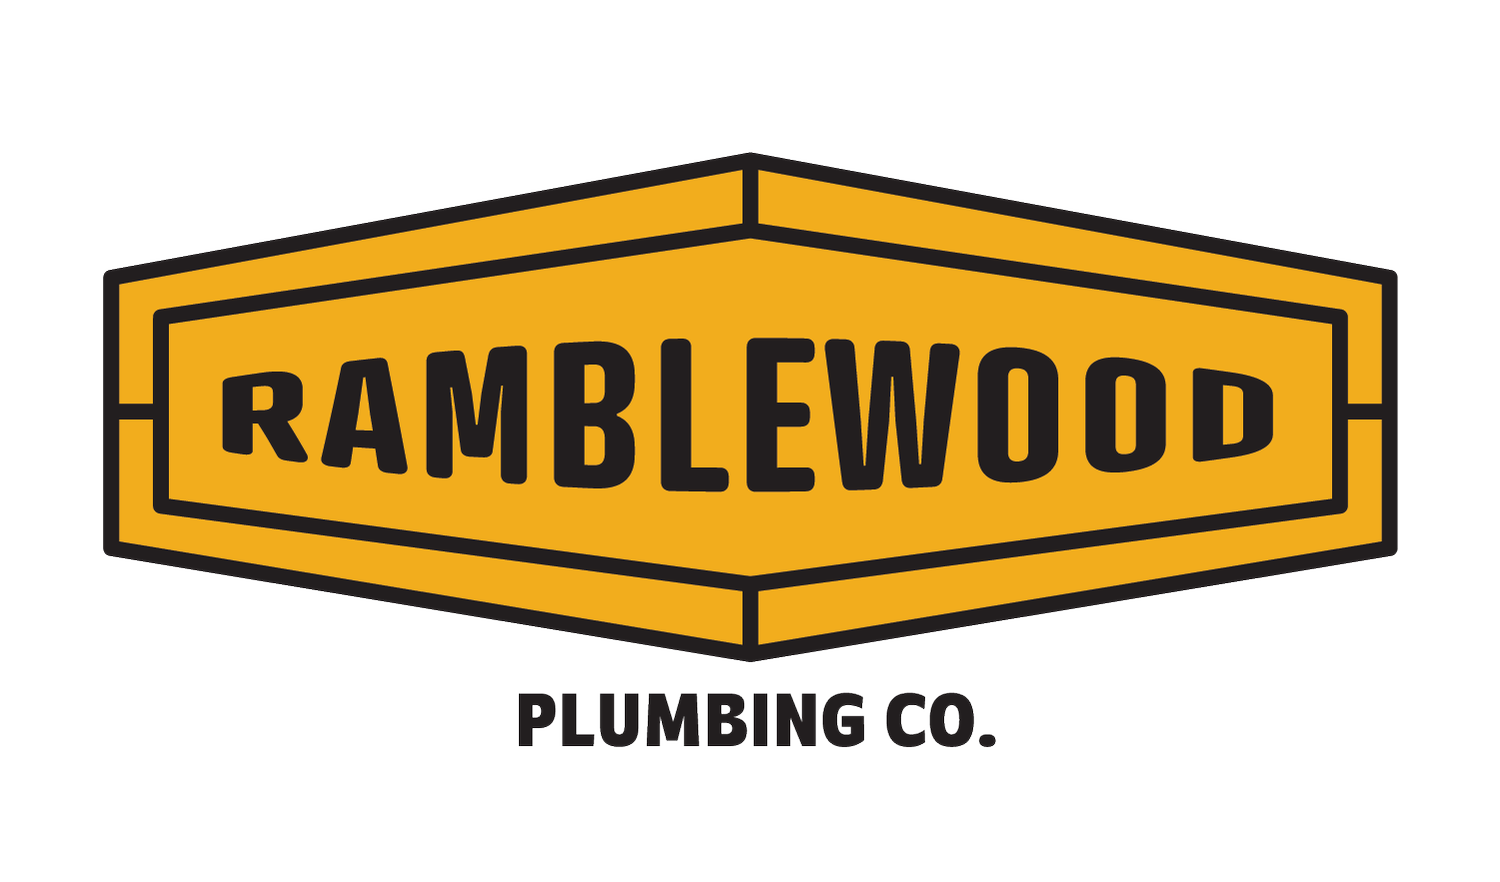 Ramblewood Plumbing Co